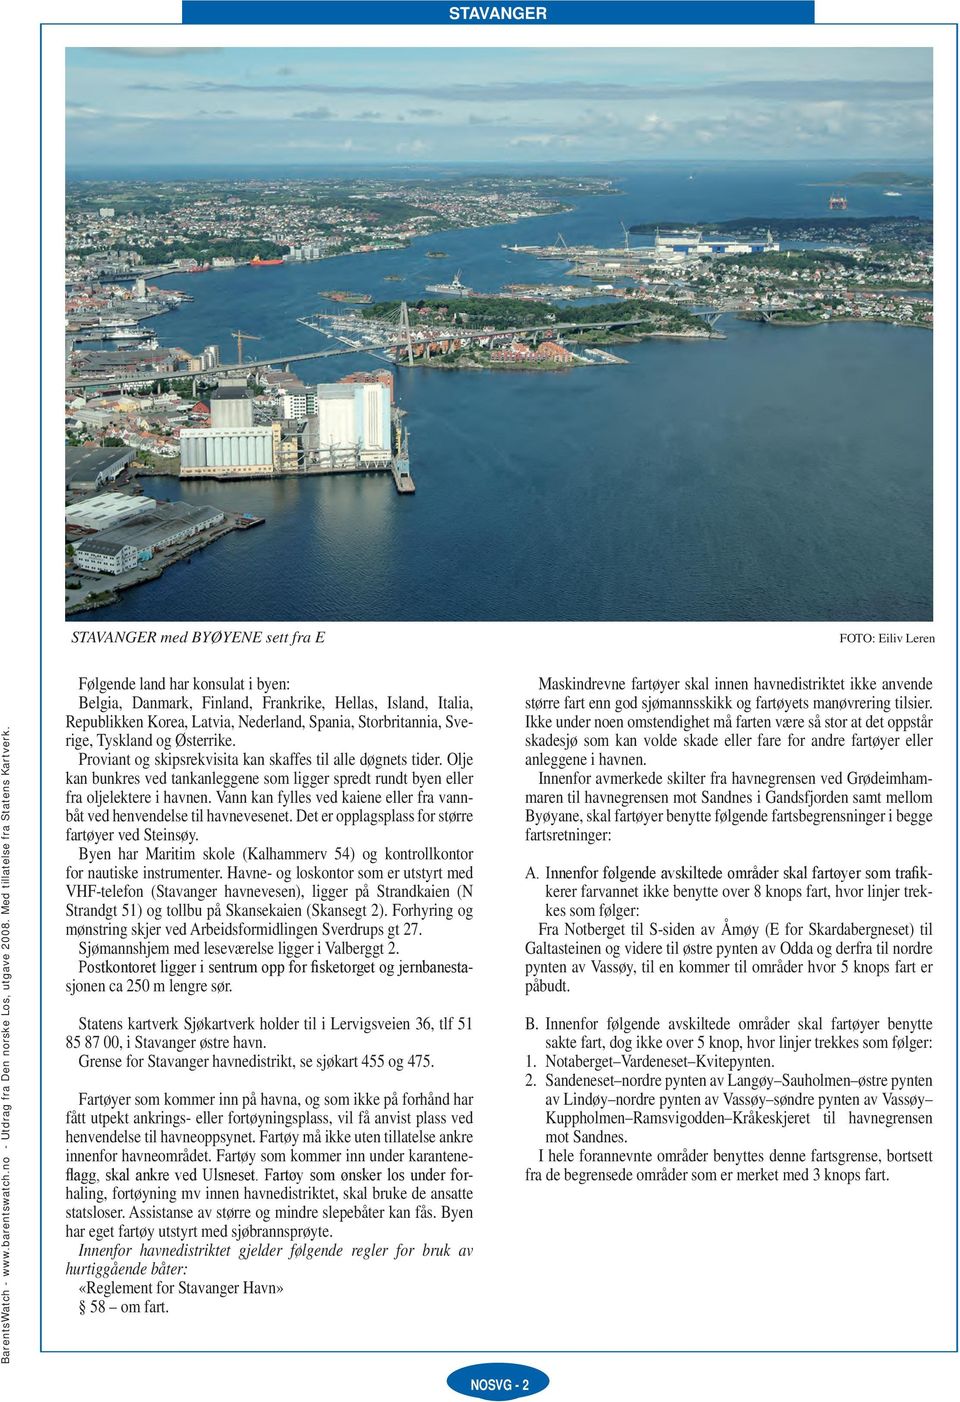 Vann kan fylles ved kaiene eller fra vannbåt ved henvendelse til havnevesenet. Det er opplagsplass for større fartøyer ved Steinsøy.